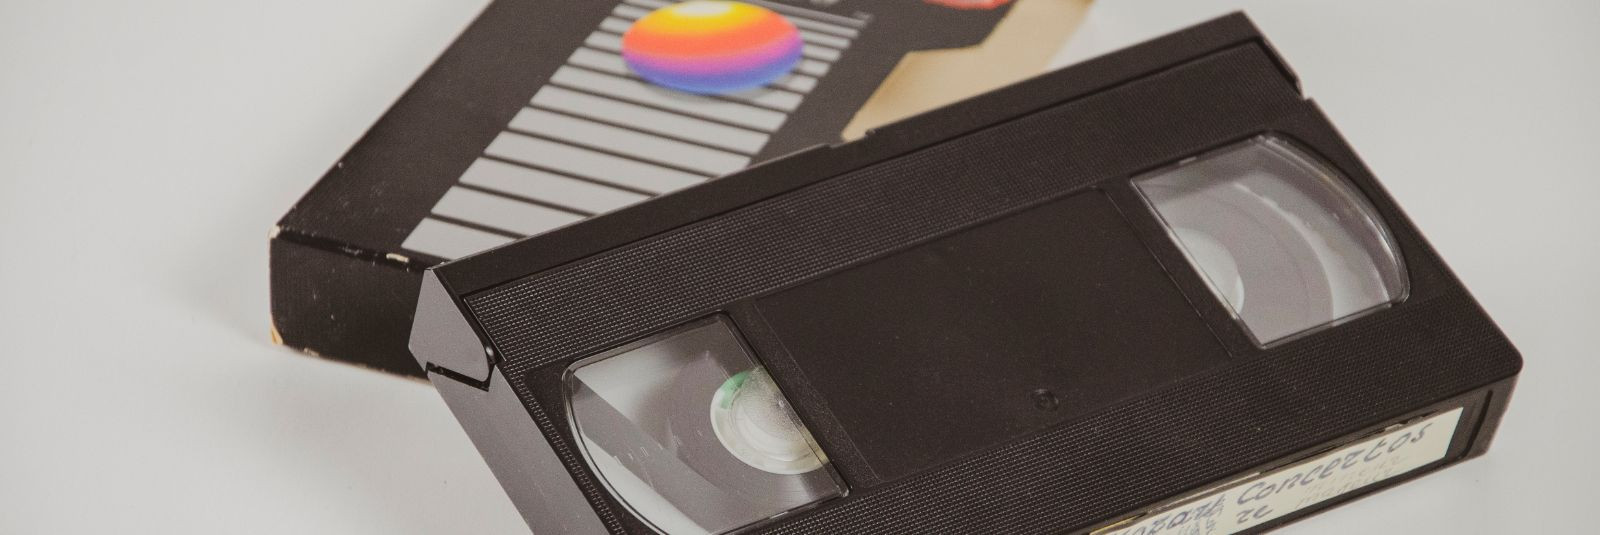 Kas sul on kodus vanu videokassette, mida sa ei saa enam vaadata, sest pole kaasaegseid seadmeid või need on ajahambast puretud? Ära anna alla! Centrumfoto paku